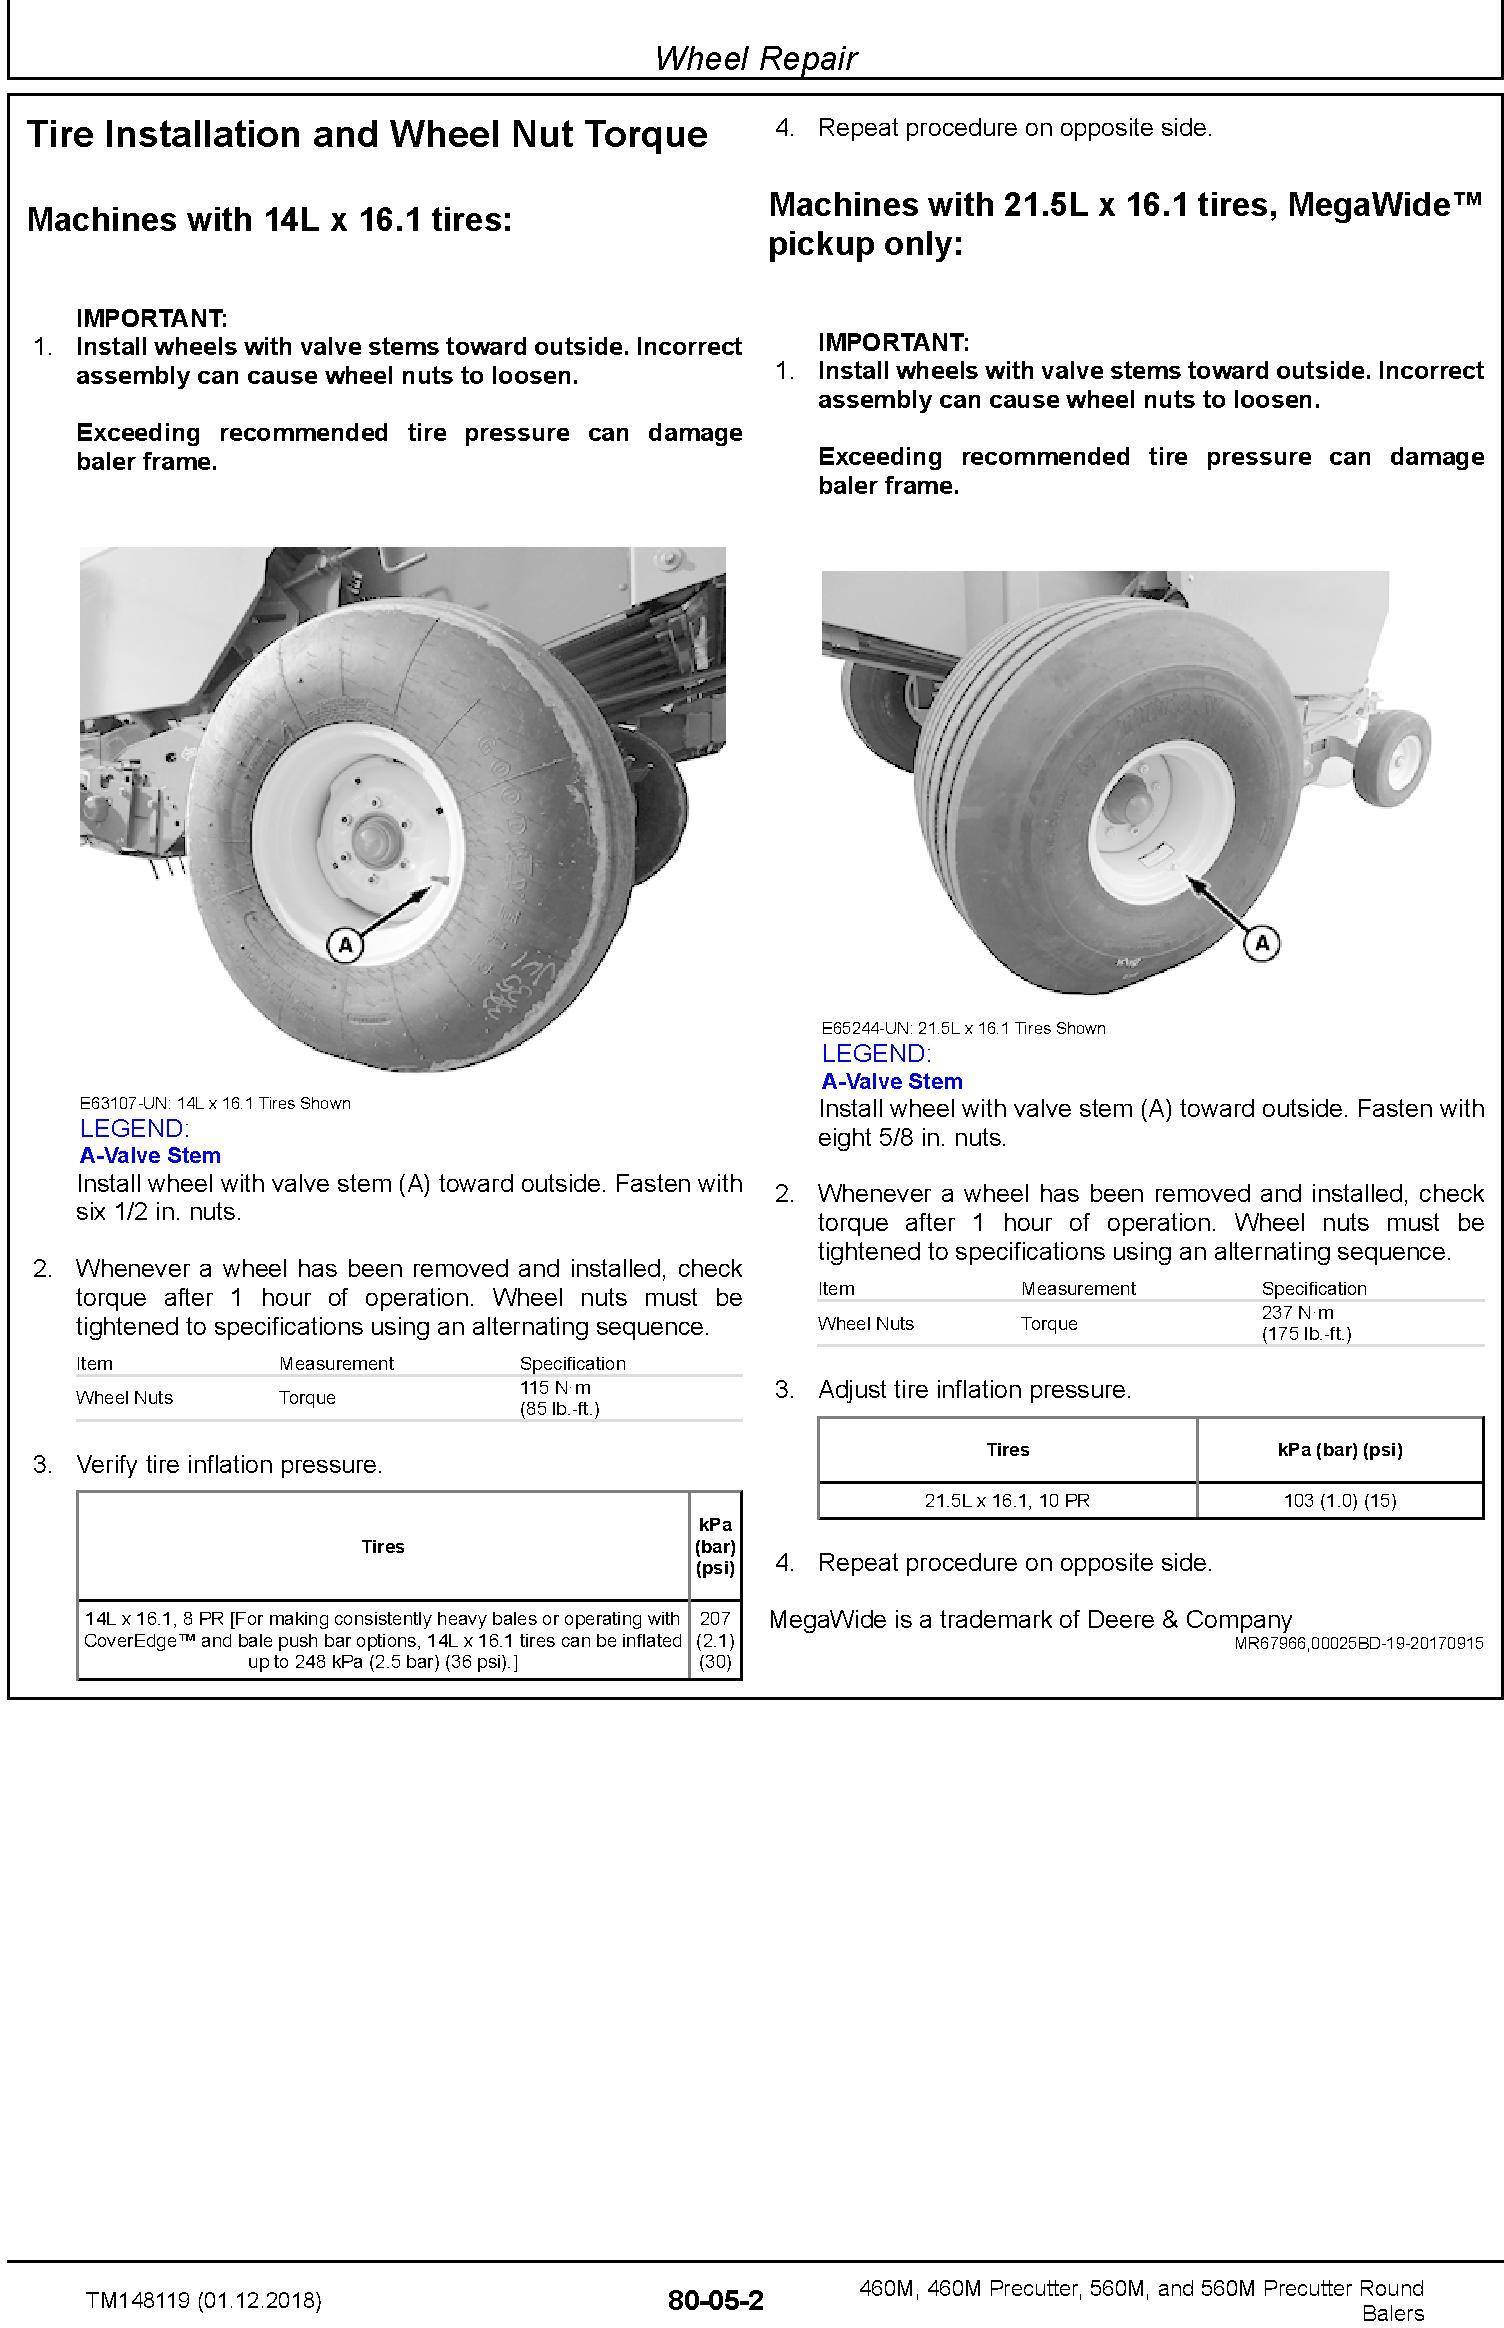 John Deere 460M, 460M Precutter, 560M, and 560M Precutter Round Balers Technical Manual (TM148119) - 2